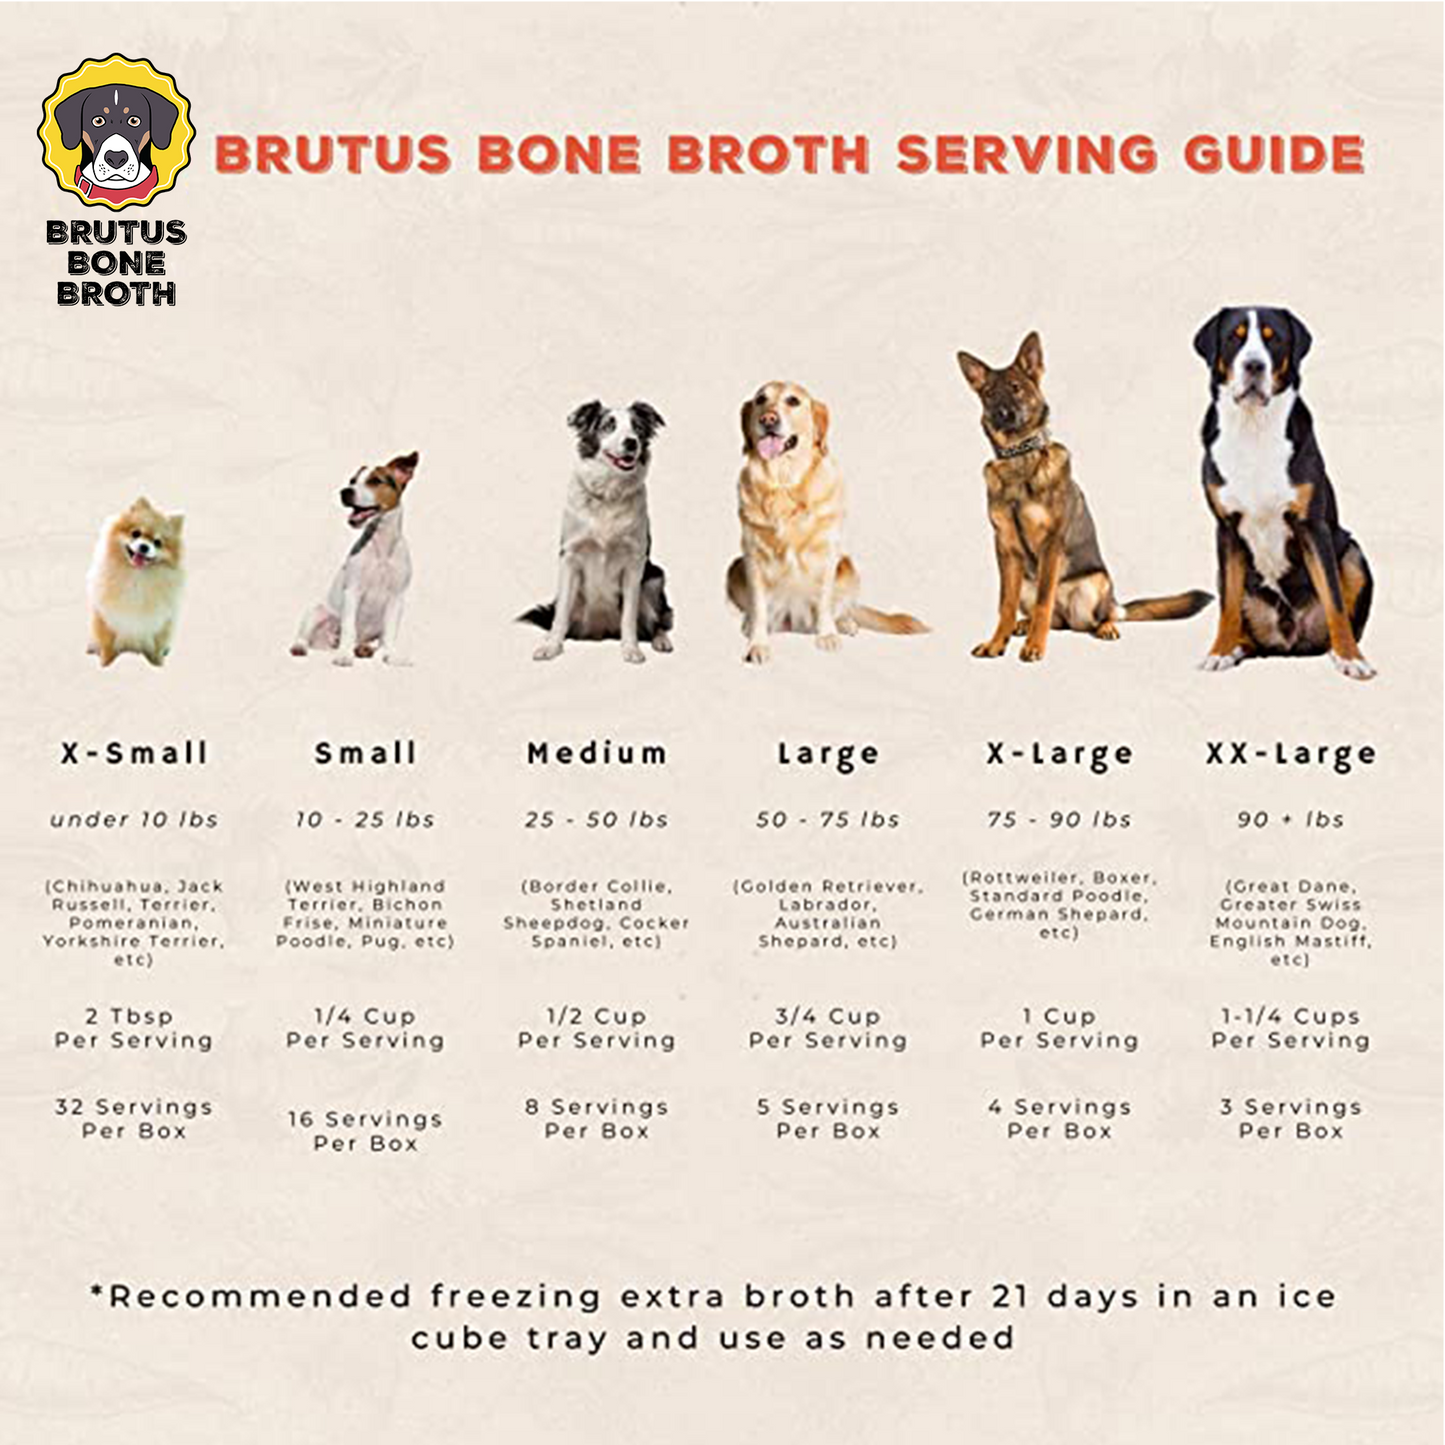 Brutus Bone Broth - Pork